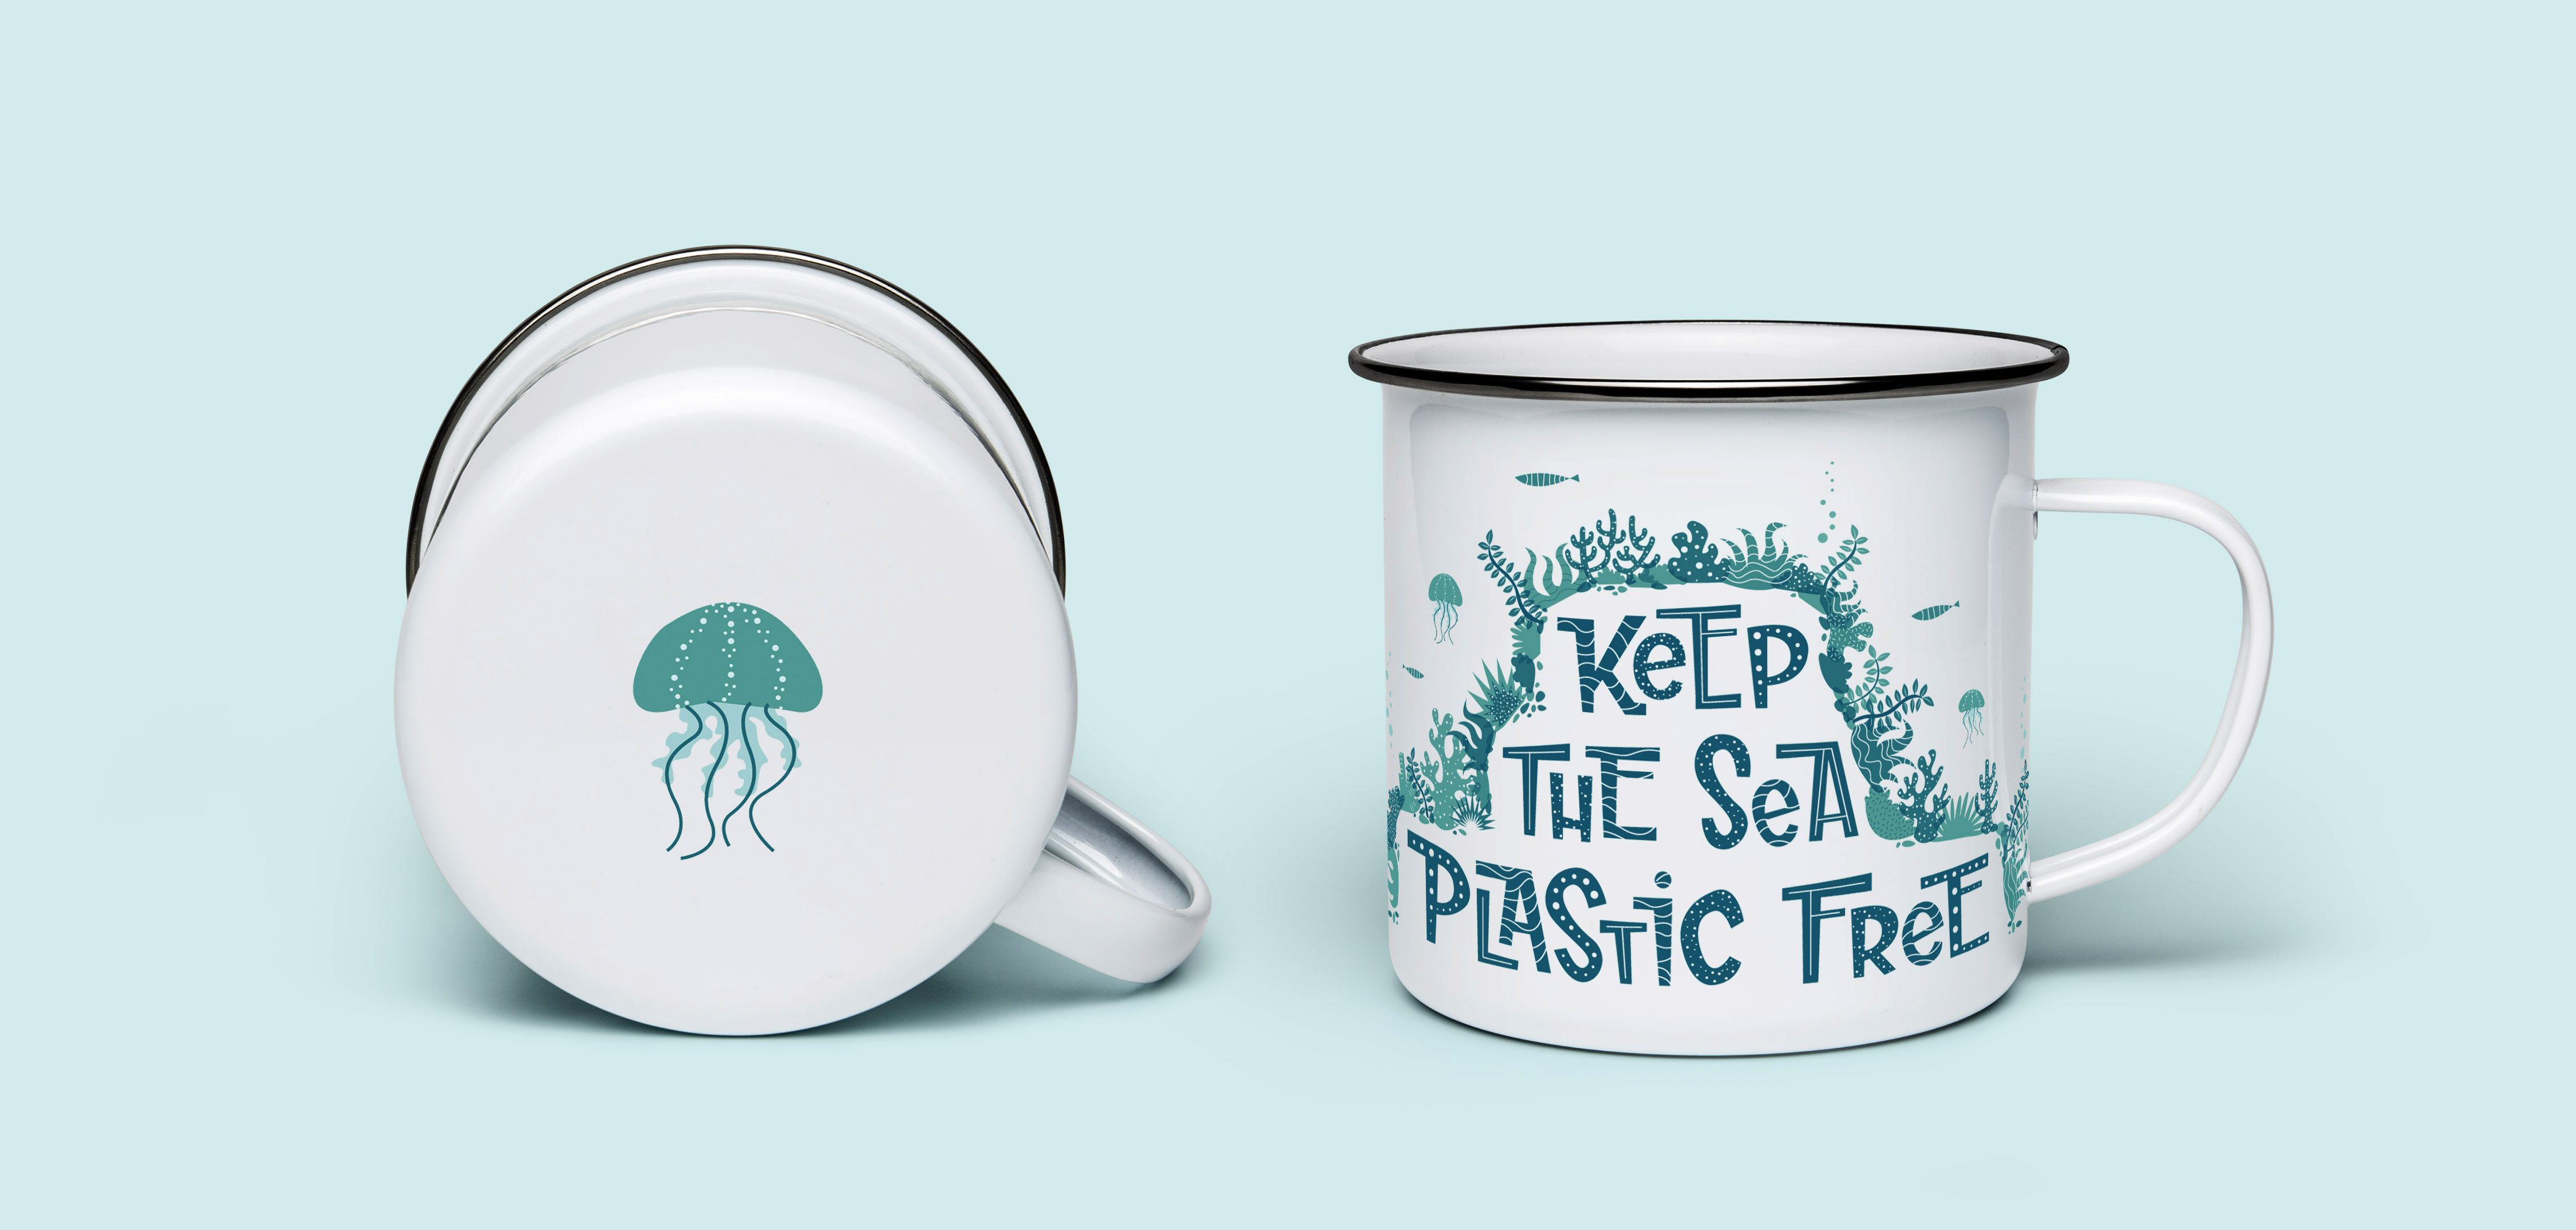 Keep the see plastic free metal mug